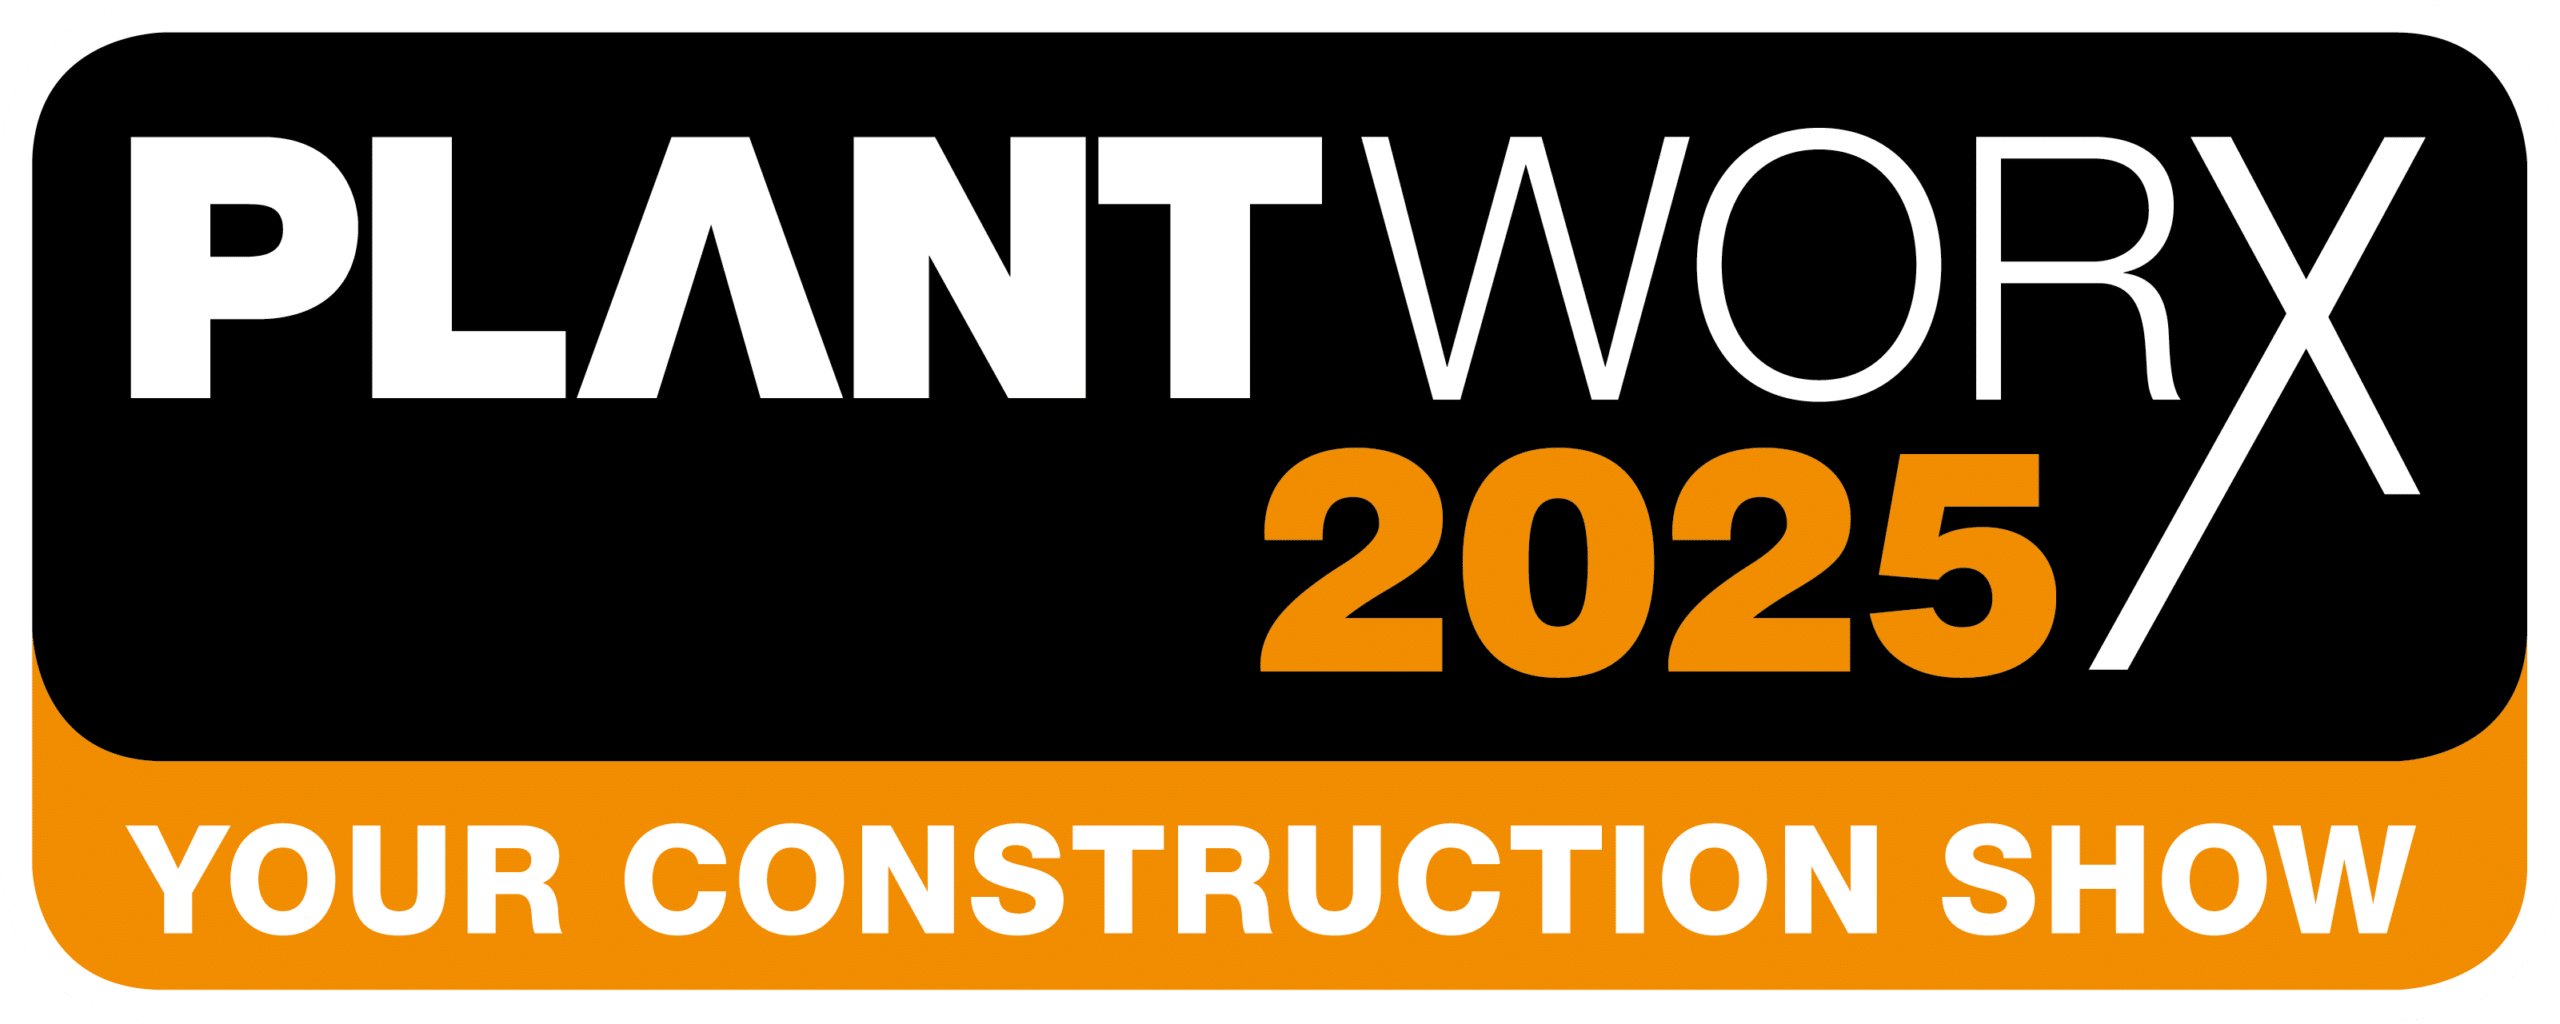 Plantworx 2025